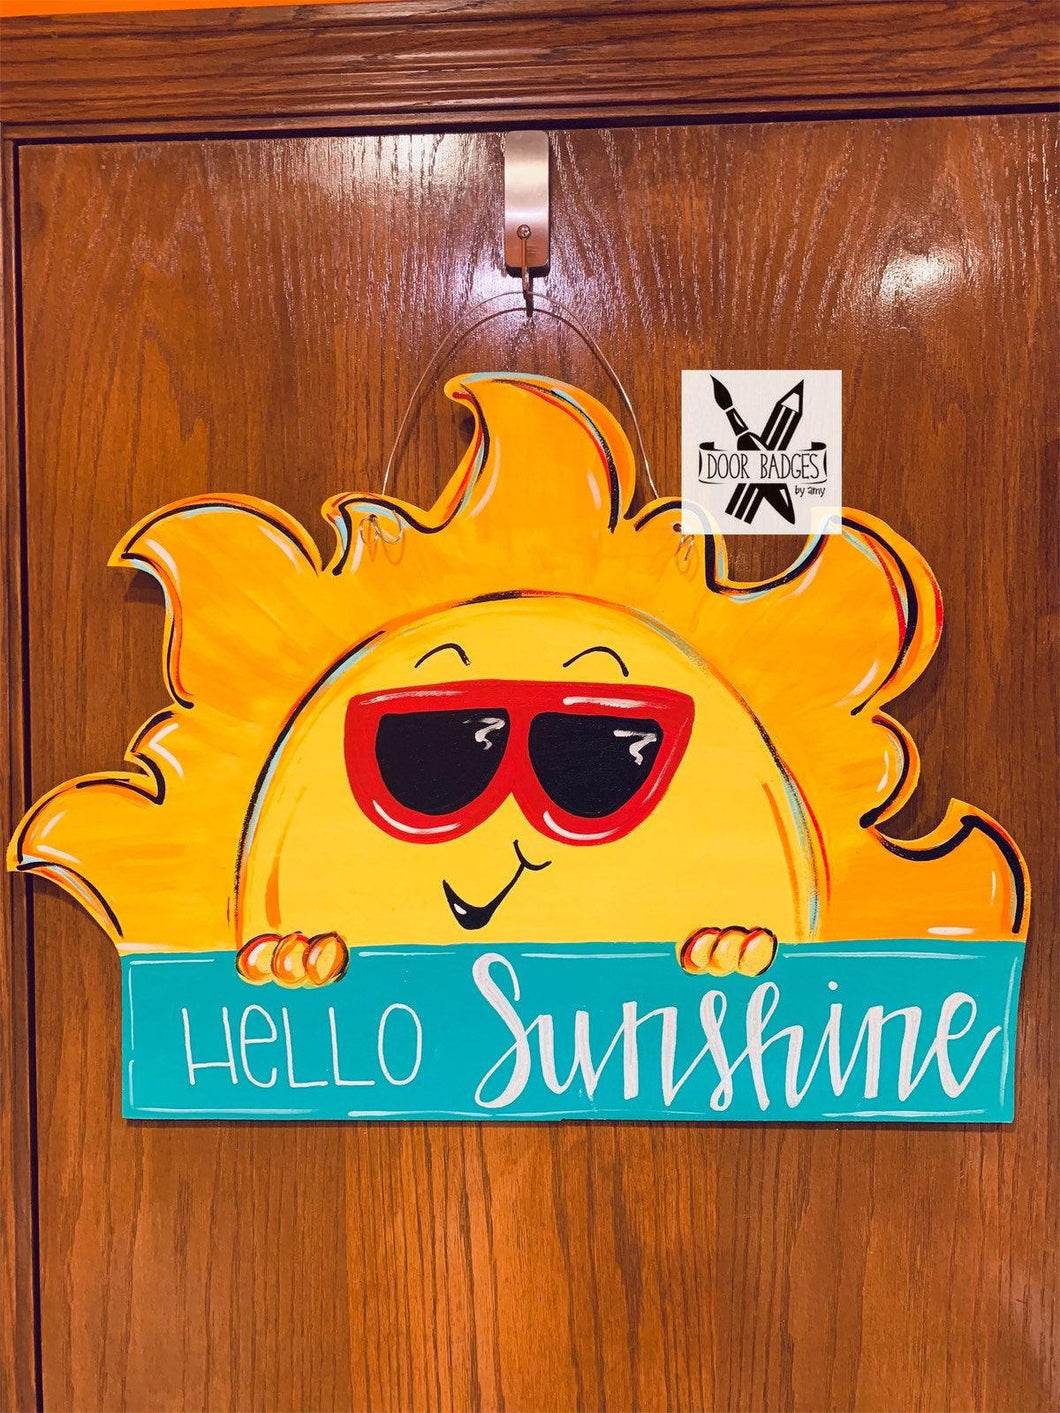 Summer Sunshine Door Hanger,  Hello Sunshine sunglasses, teacher gift, wood cut out hand painted door hanger - DoorBadges